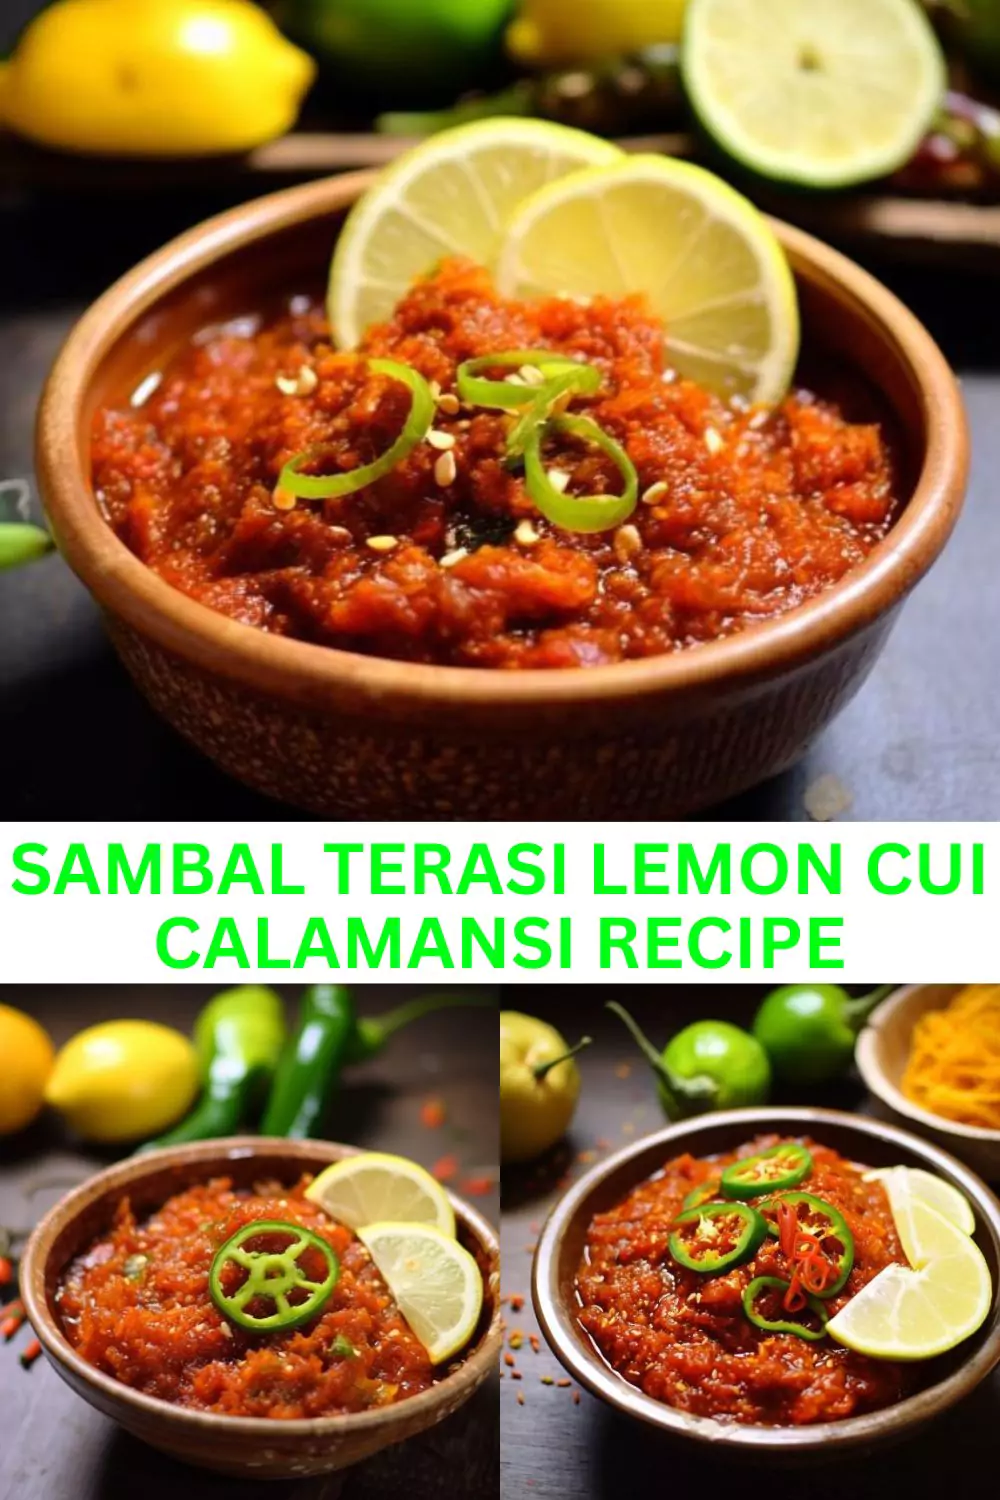 Best Sambal Terasi Lemon Cui Calamansi Recipe